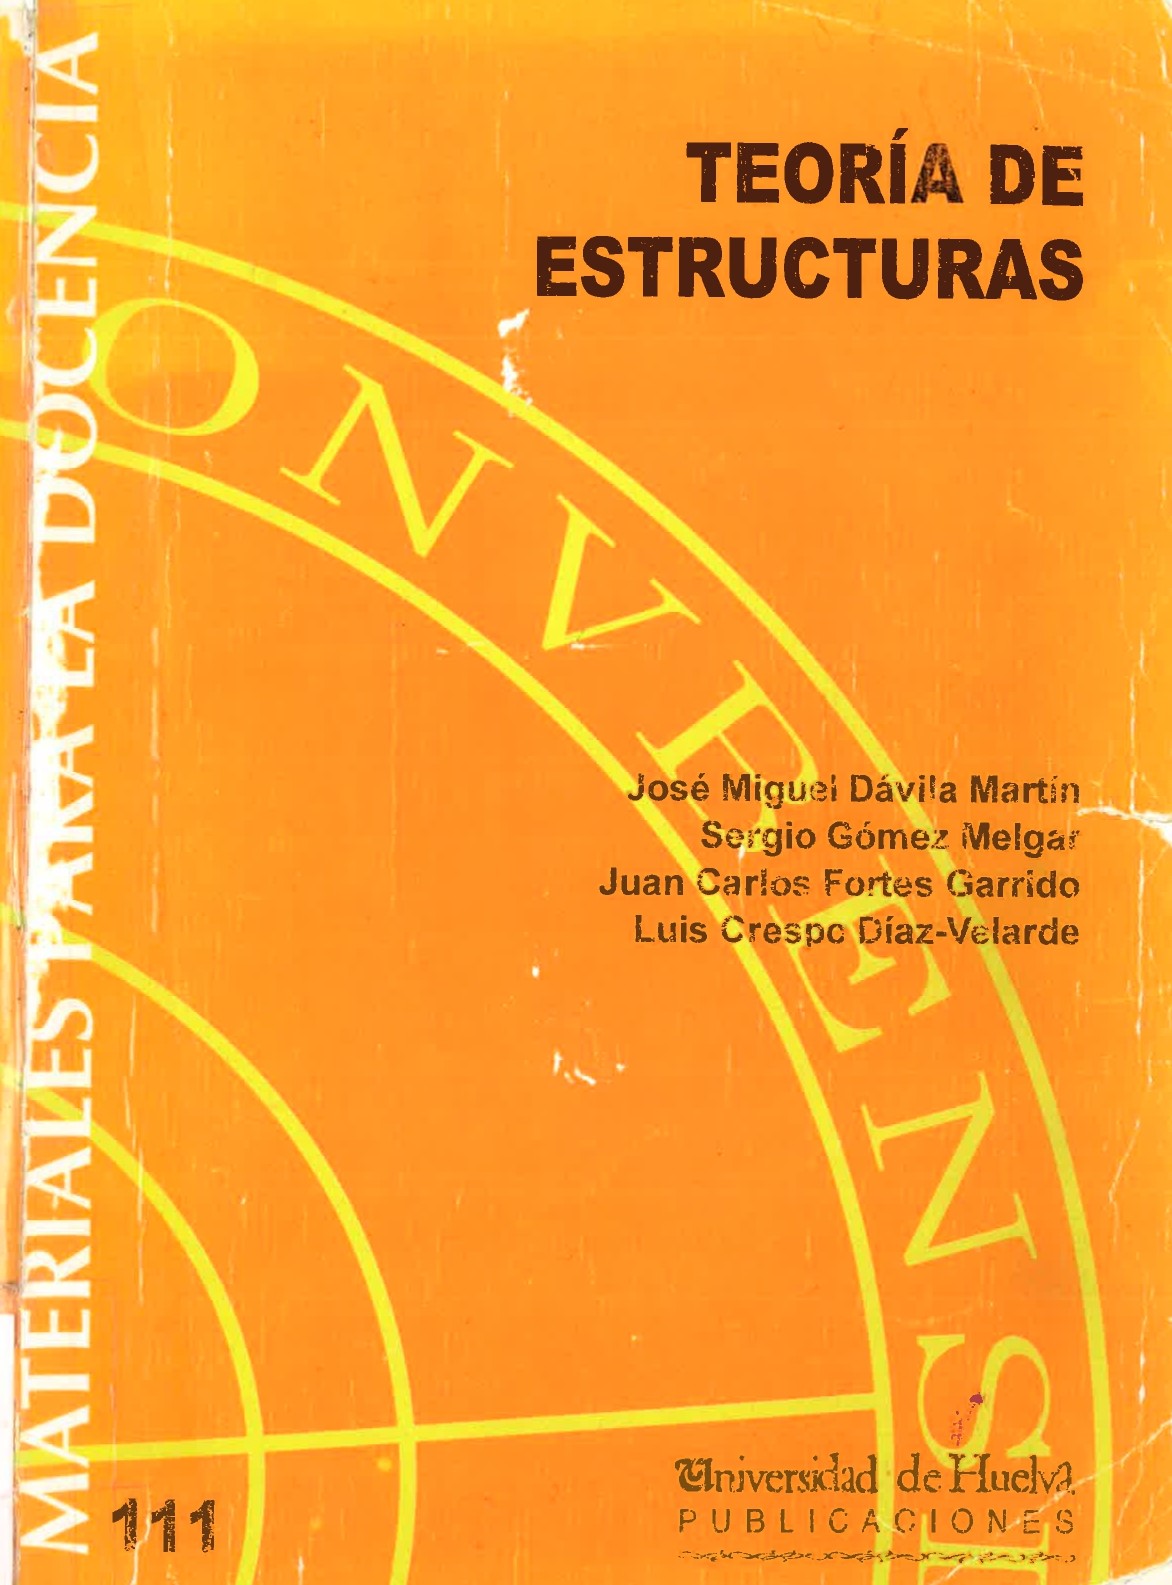 Imagen de portada del libro Teoría de estructuras